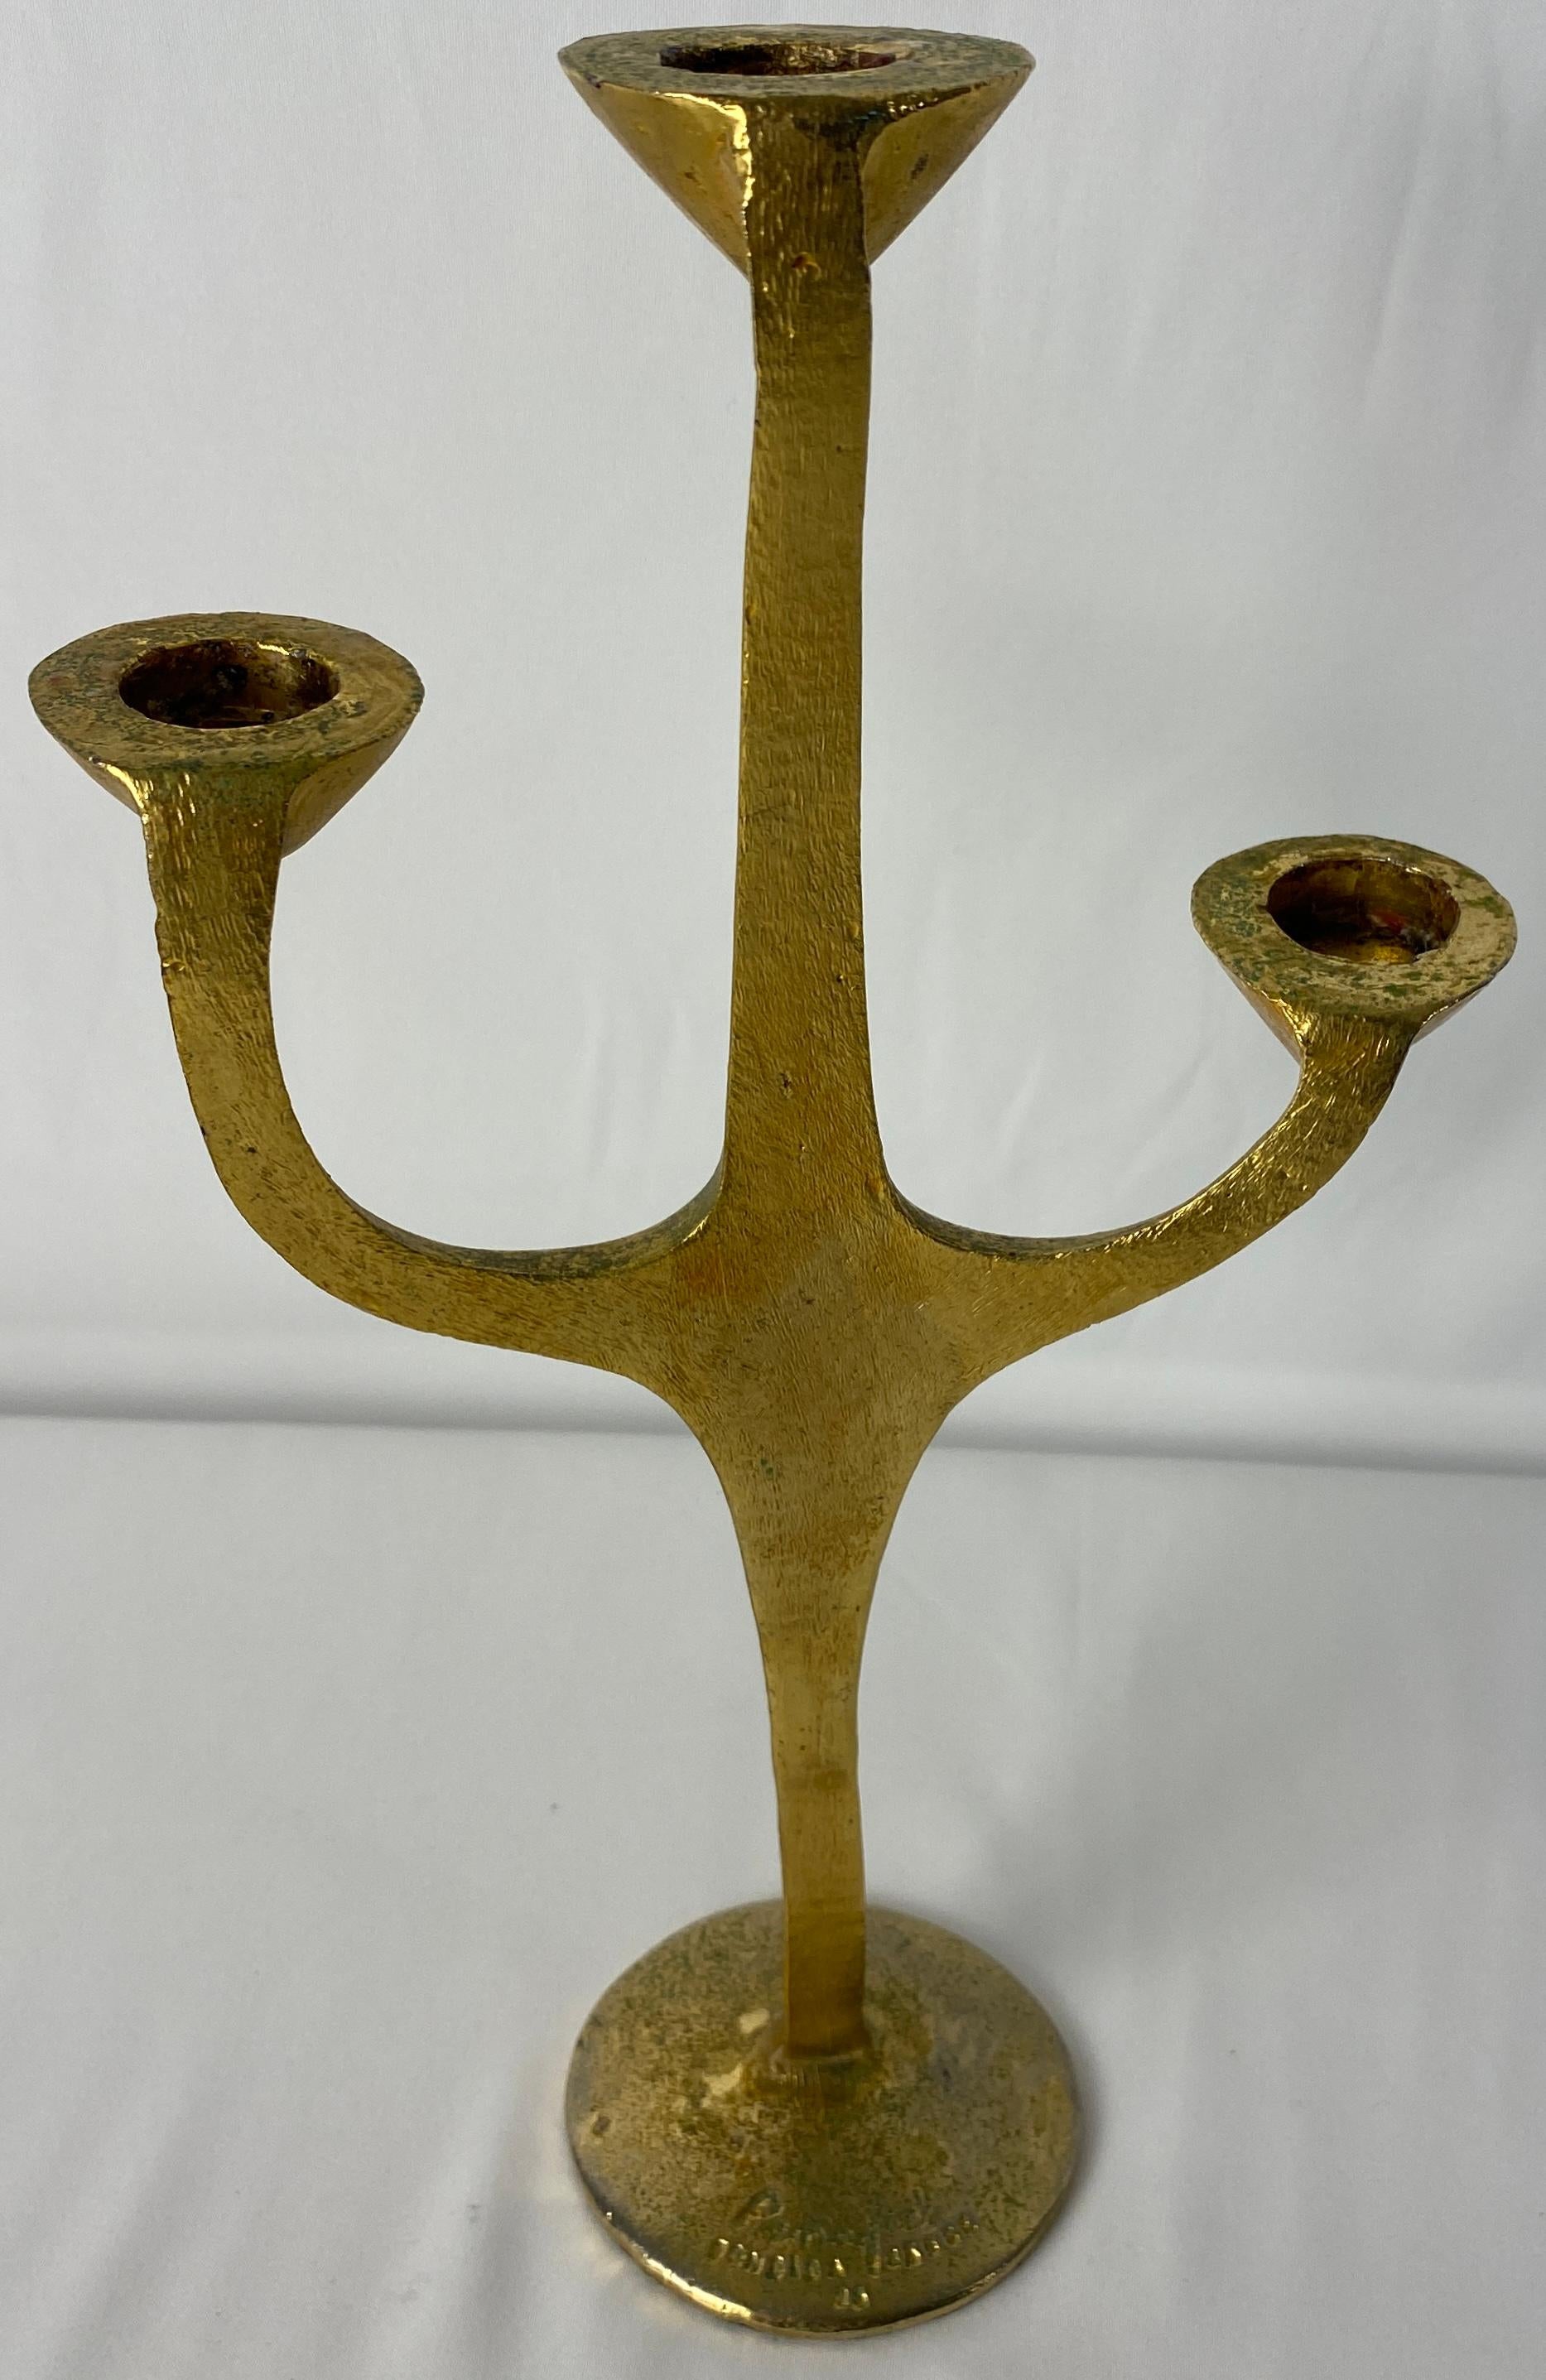 Un beau bougeoir sculptural à trois bras en bronze par Carlos Penafiel. 
Signé.

Mesures : 11 5/8